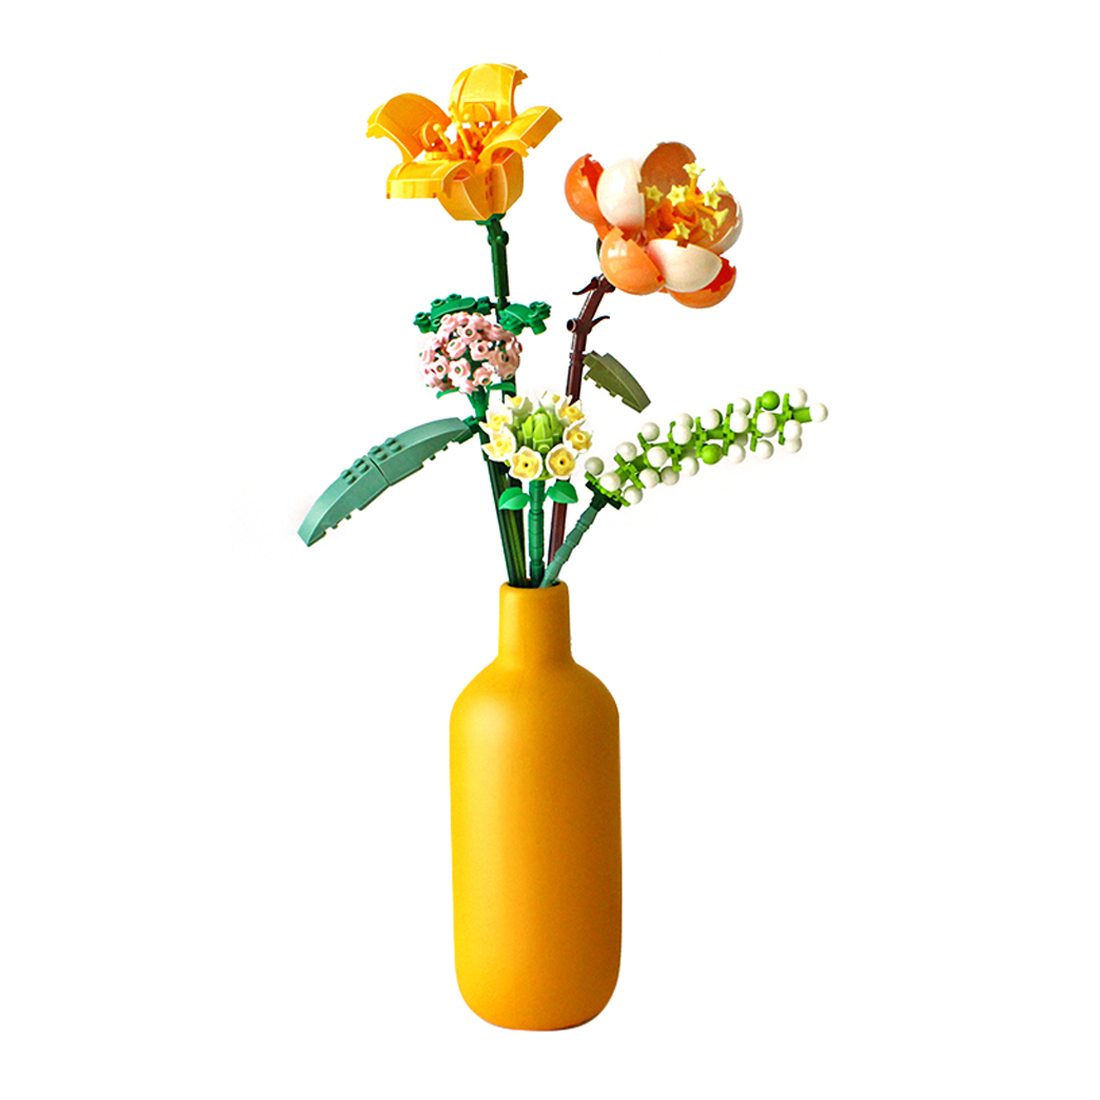 456Pcs Creative Flower Building Block Set without Vase - Sunshine Vitality Orange